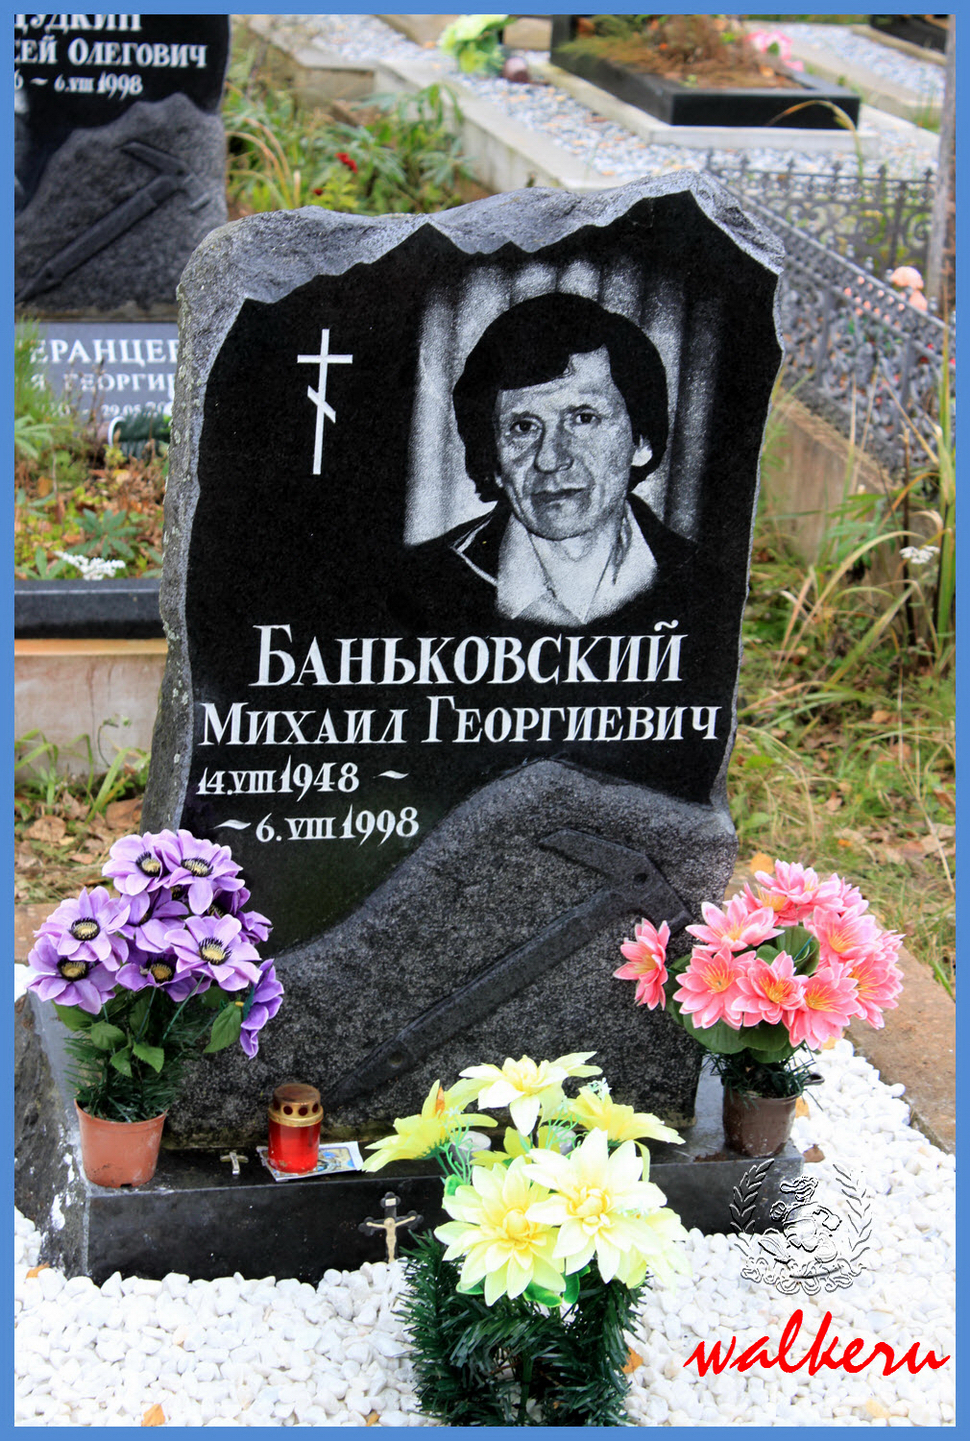 Могила Баньковского М.Г. на Северном кладбище